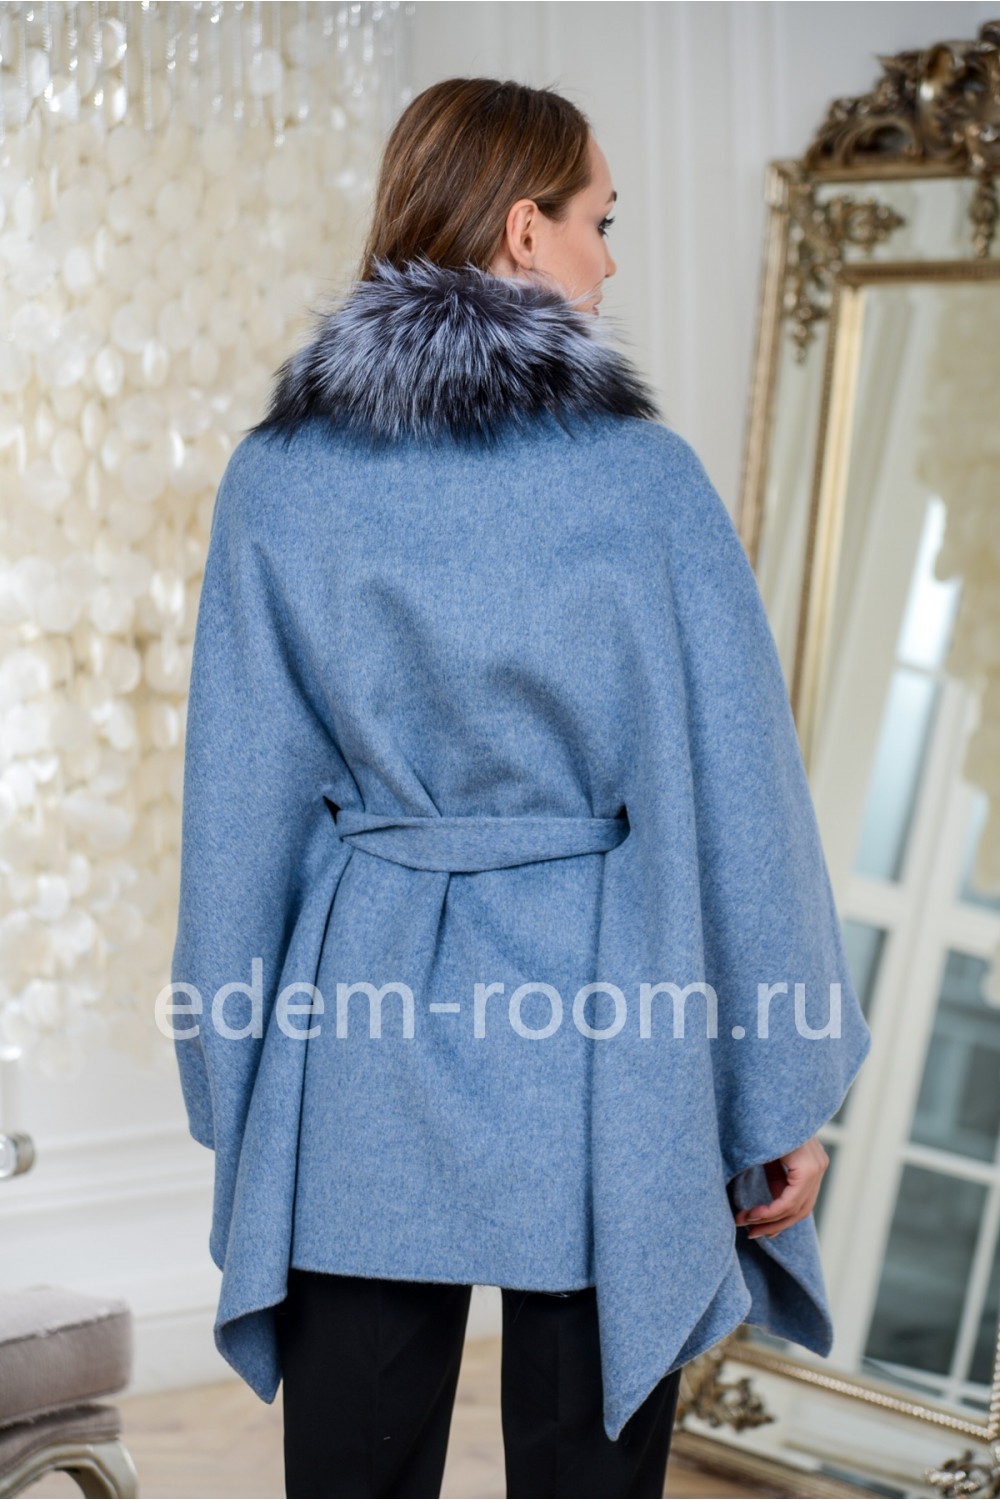 Пальто - пончо отороченное мехом чернобурки